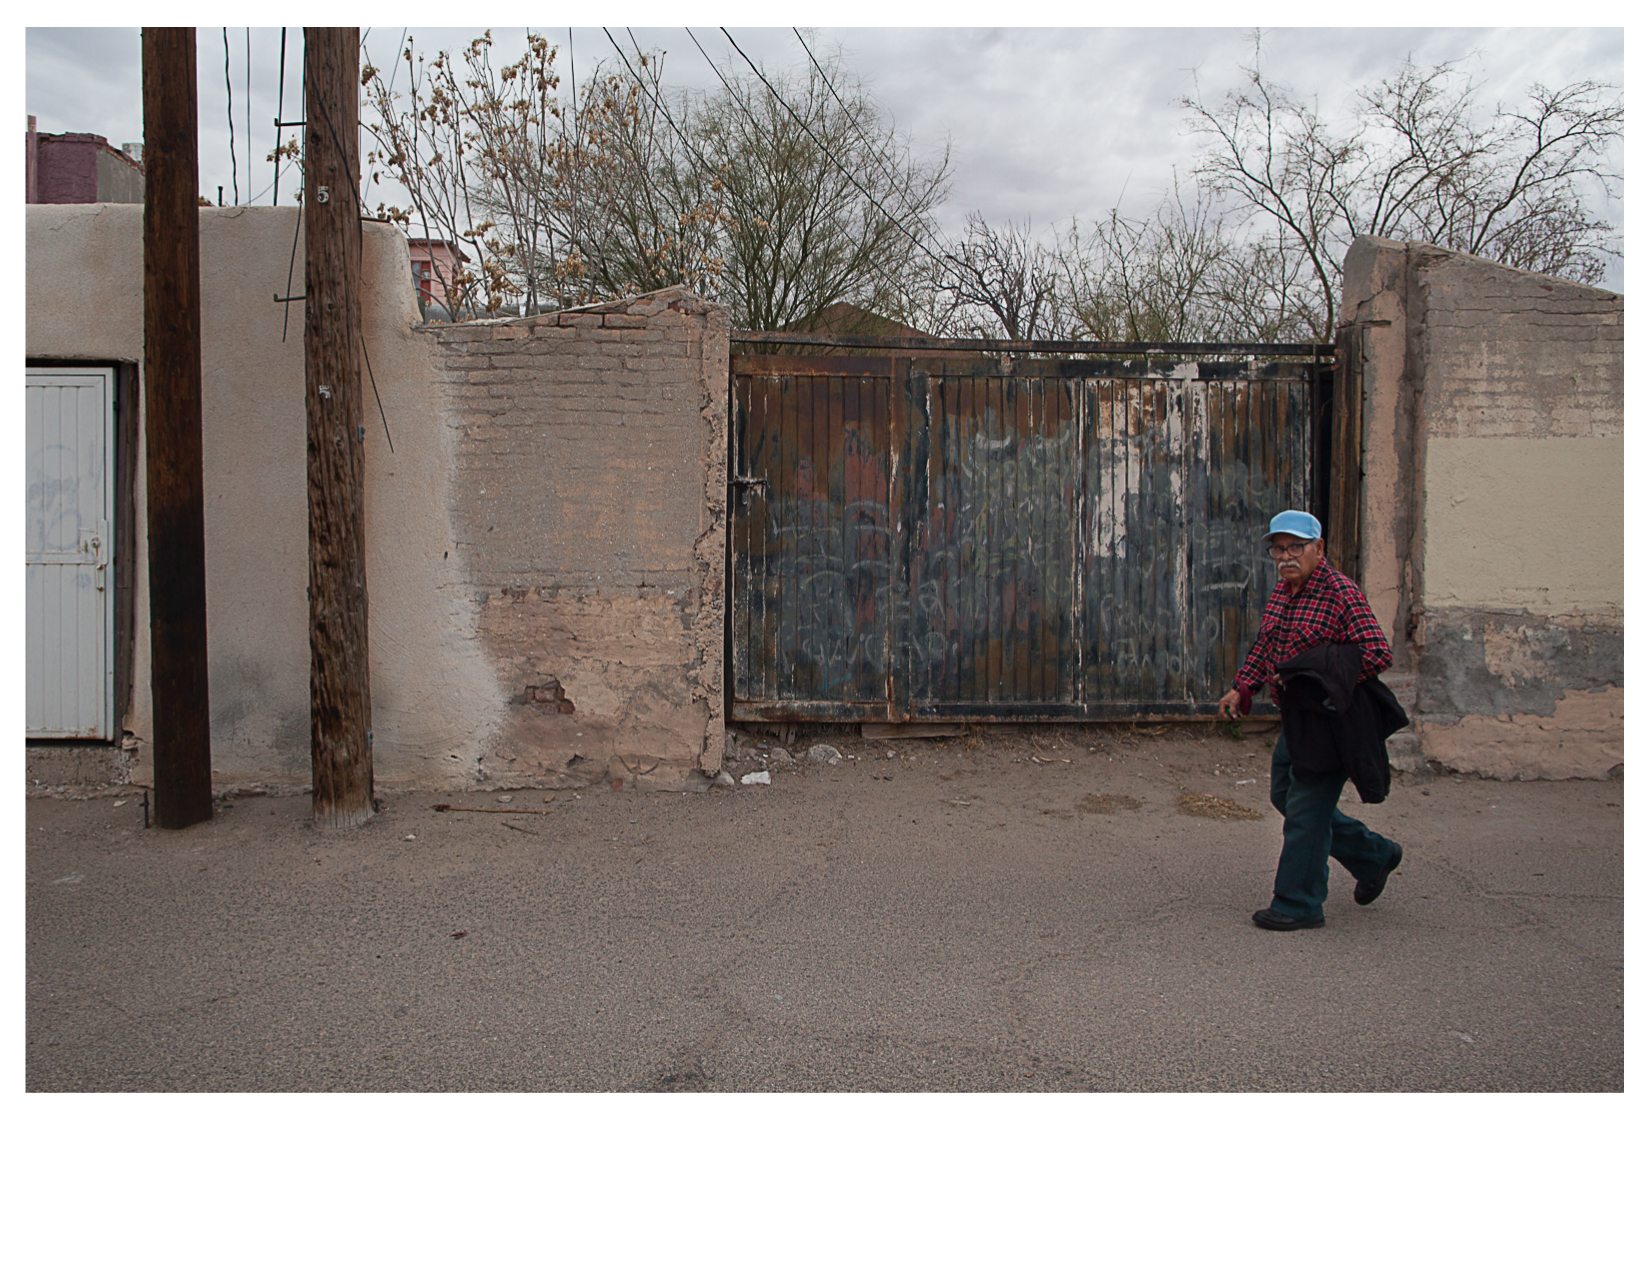 Man in Alley, El Segundo Bario, TX